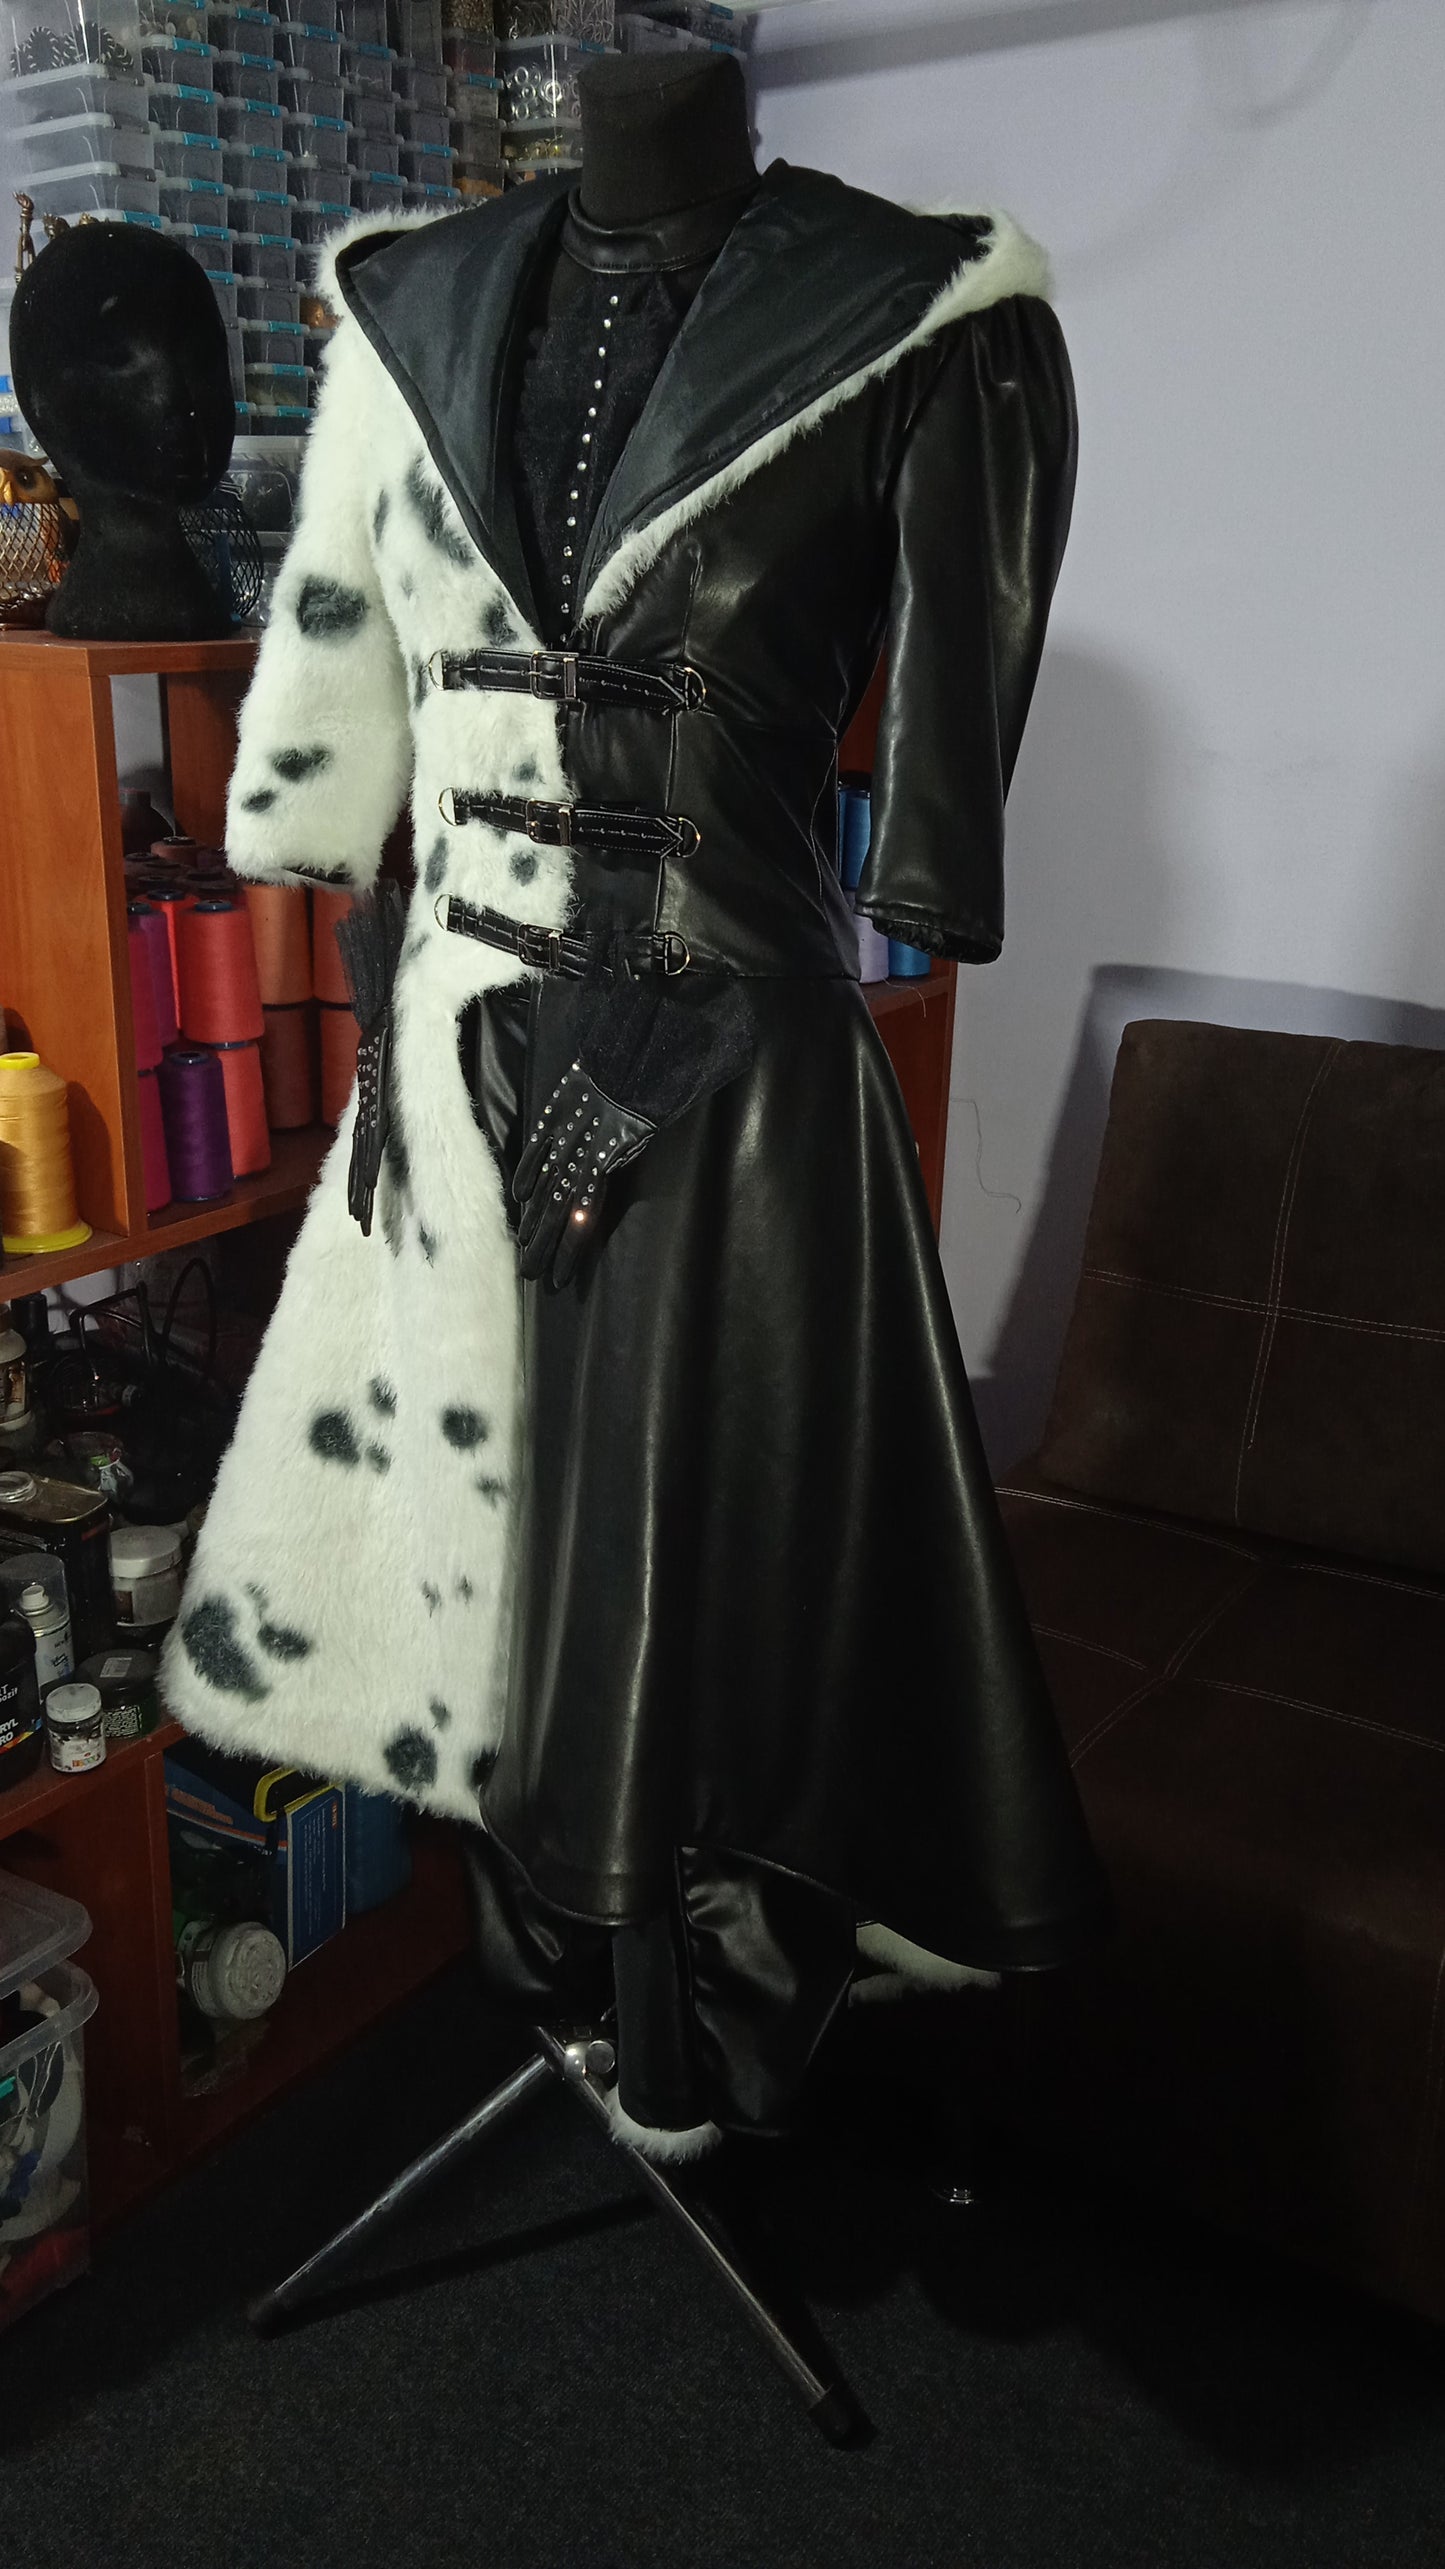 Cruella dalmatian outfit